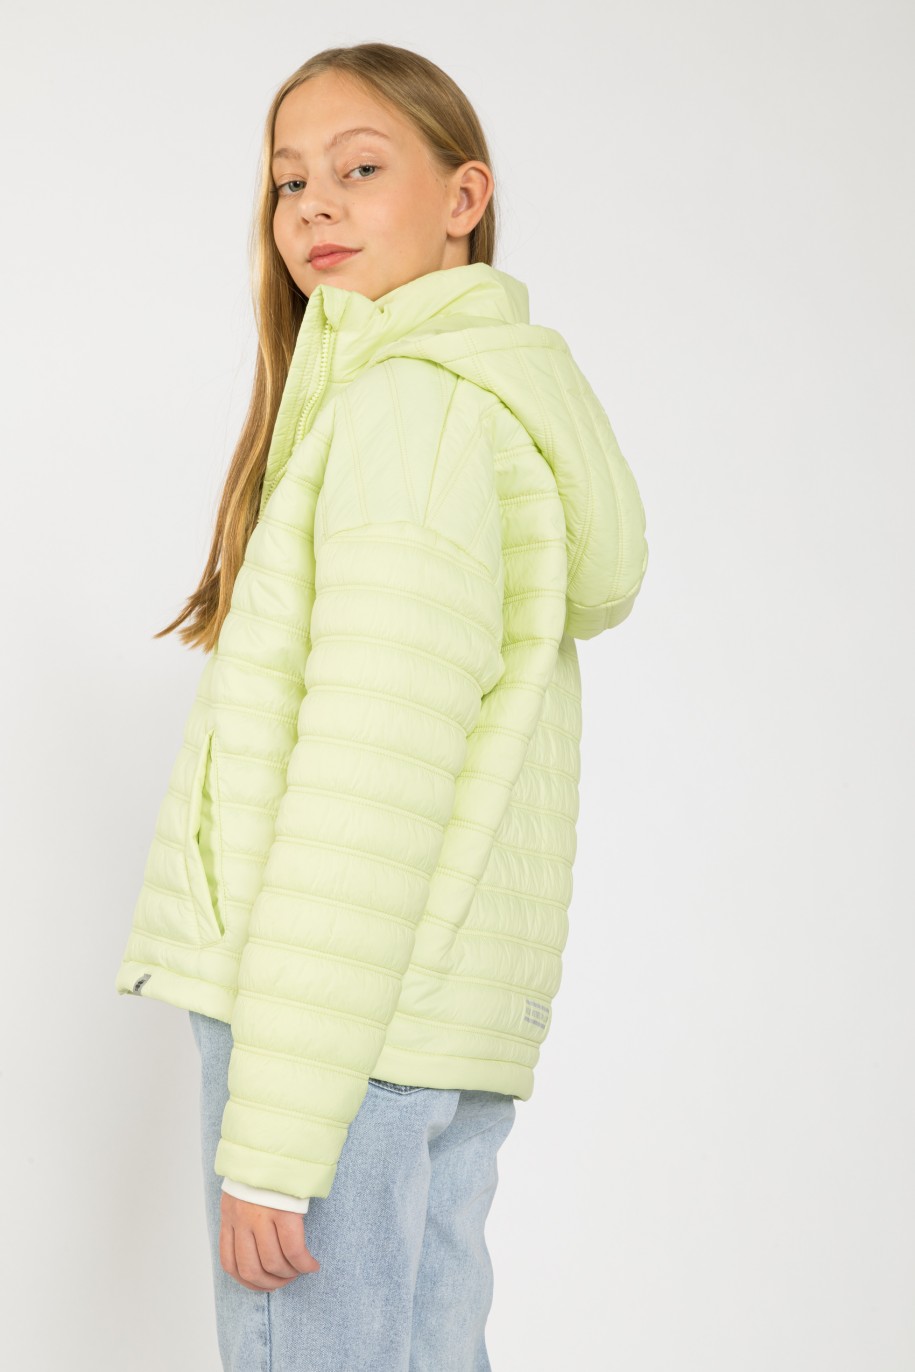 Limonkowa kurtka przejściowa z kapturem dla dziewczyny - 41749